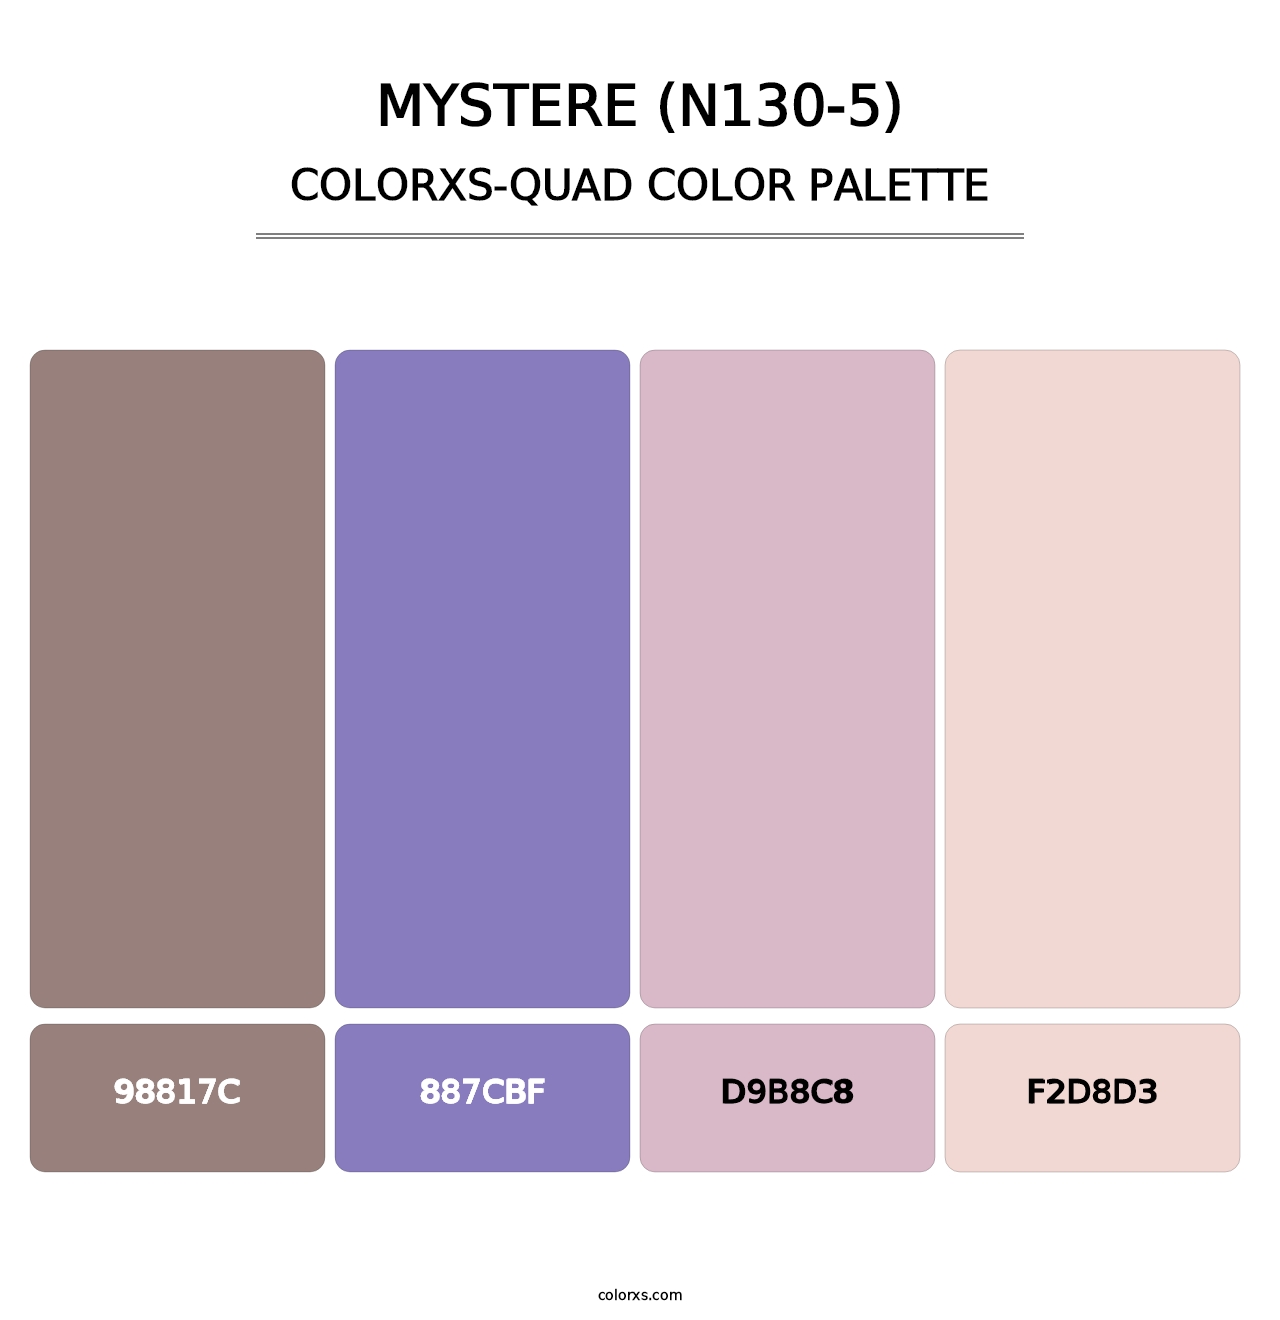 Mystere (N130-5) - Colorxs Quad Palette